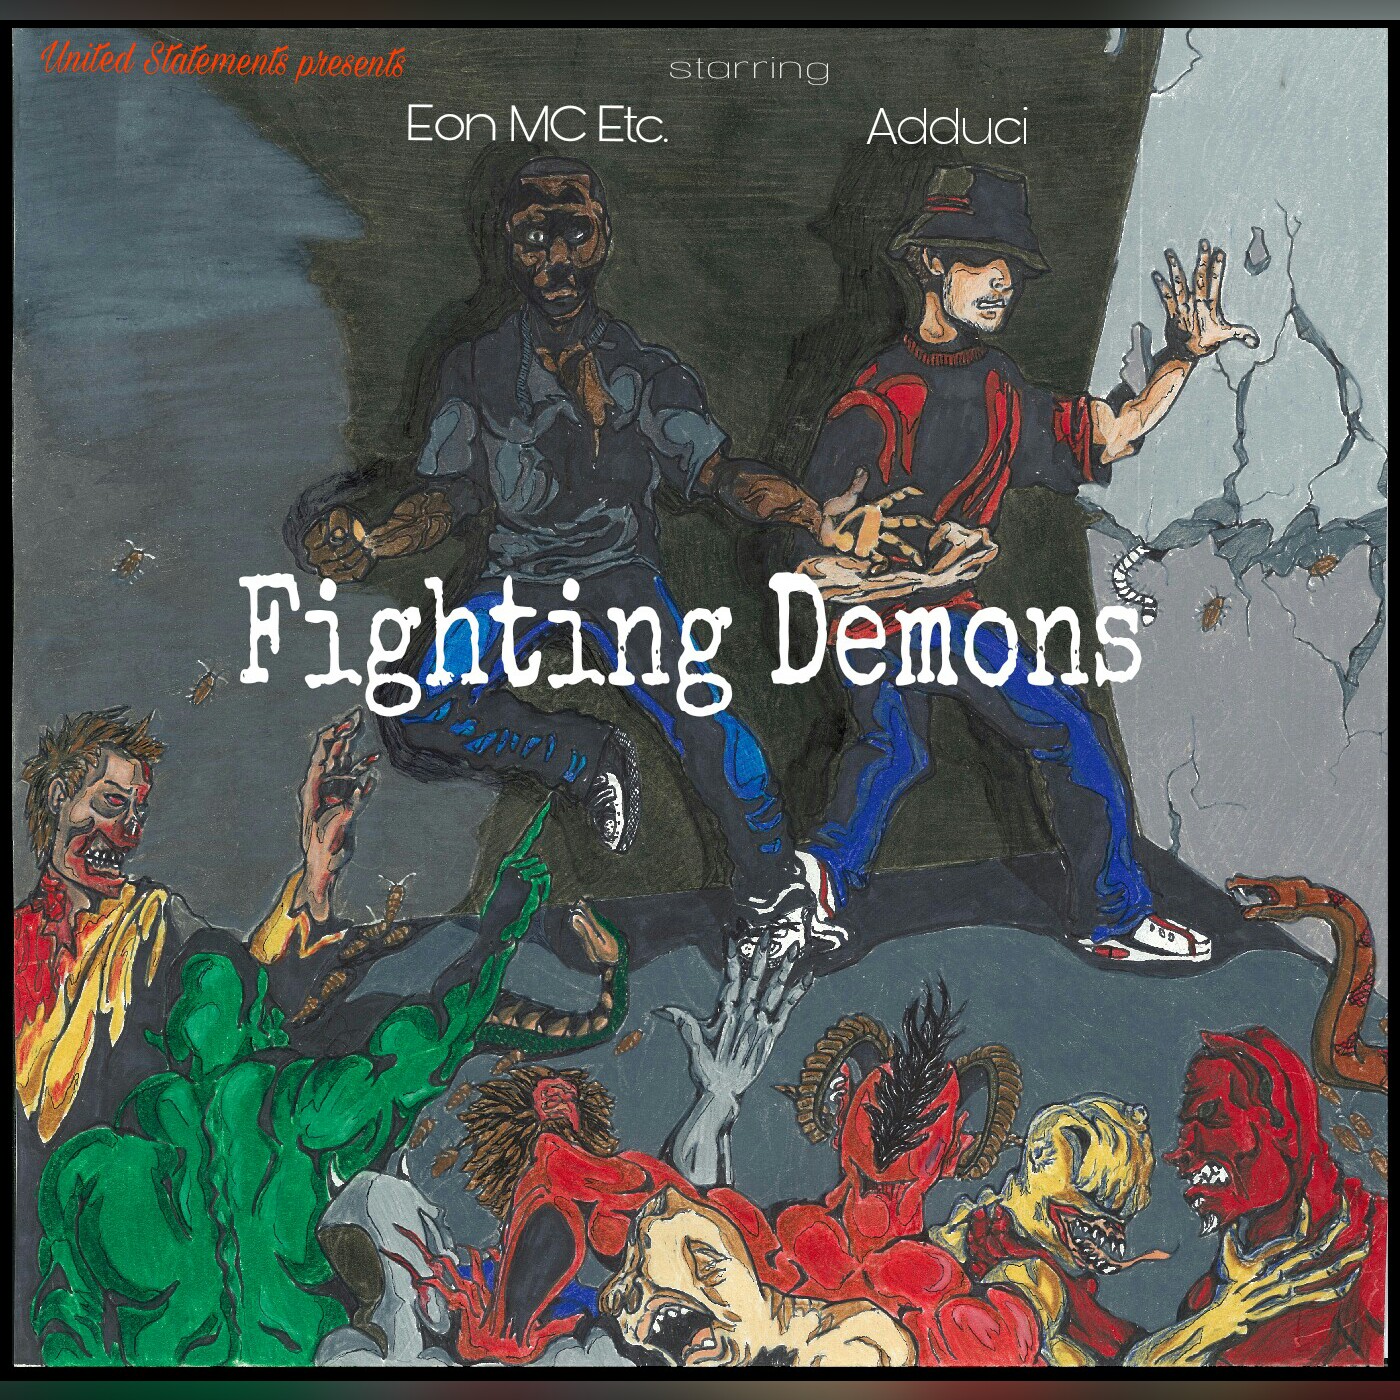  Eon MC Etc. & Adduci – Fighting Demons